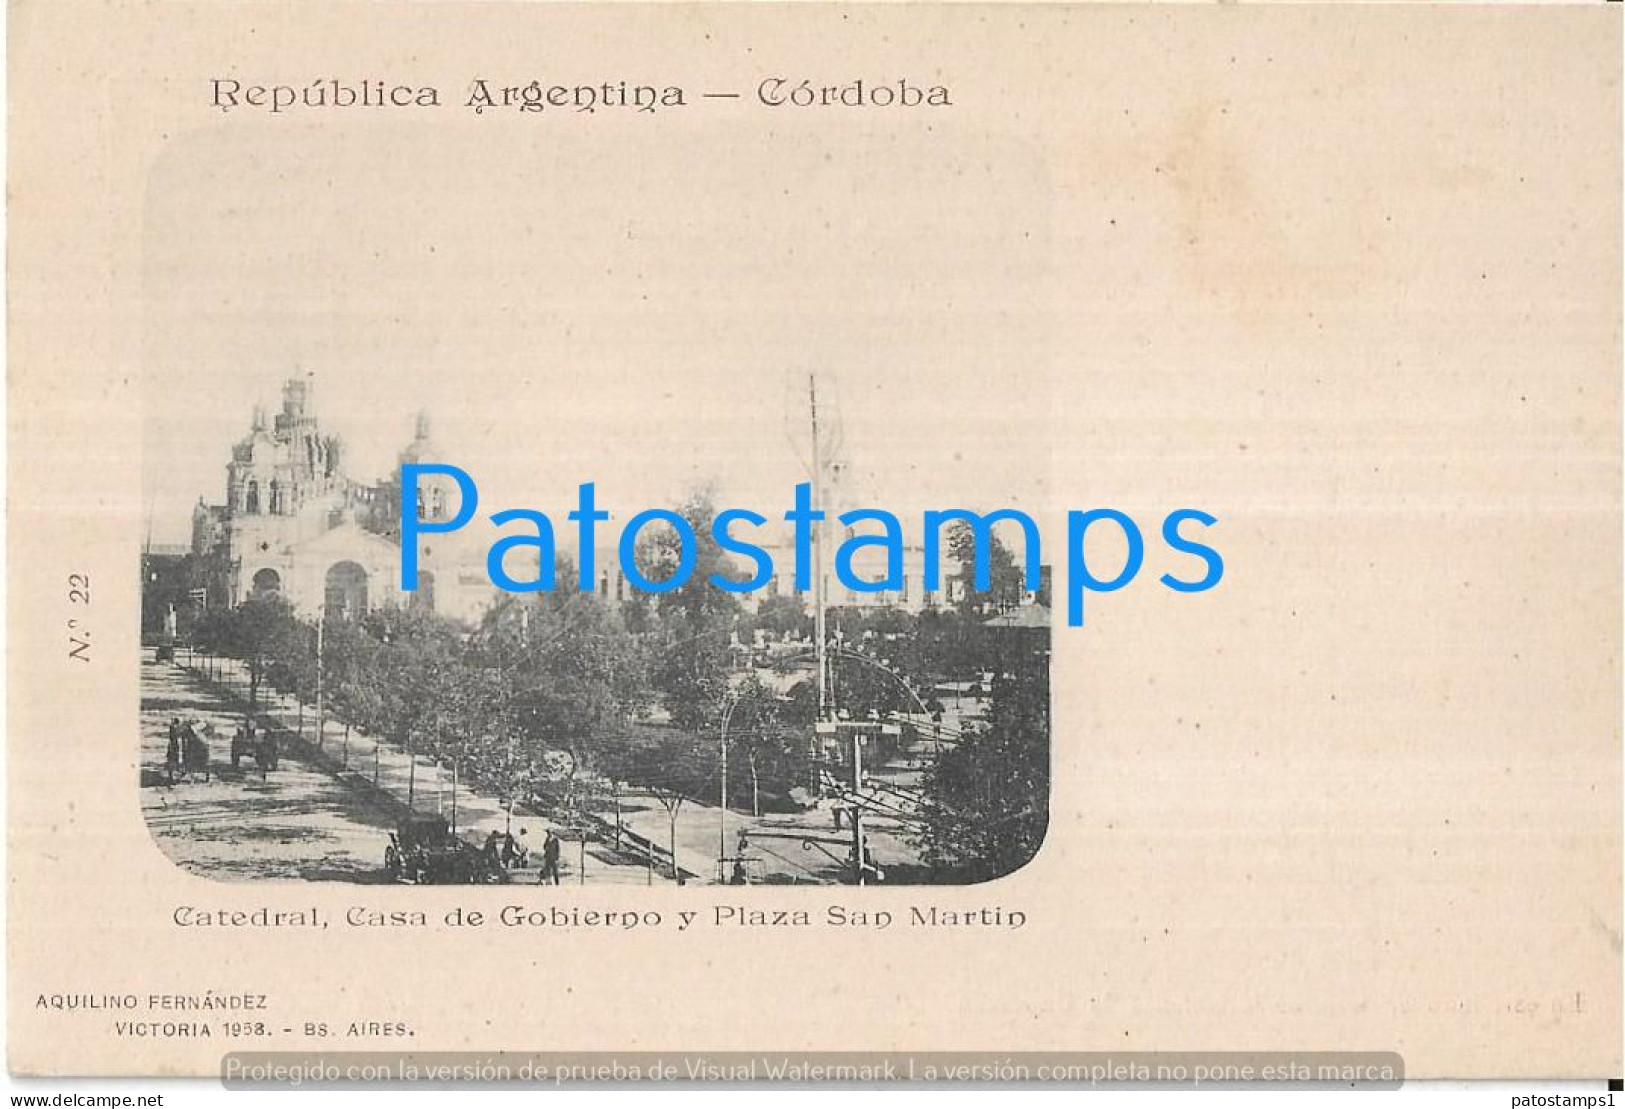 227295 ARGENTINA CORDOBA CATEDRAL CASA DE GOBIERNO Y PLAZA SAN MARTIN COLECCION AQUILINO FERNANDEZ POSTCARD - Argentinien